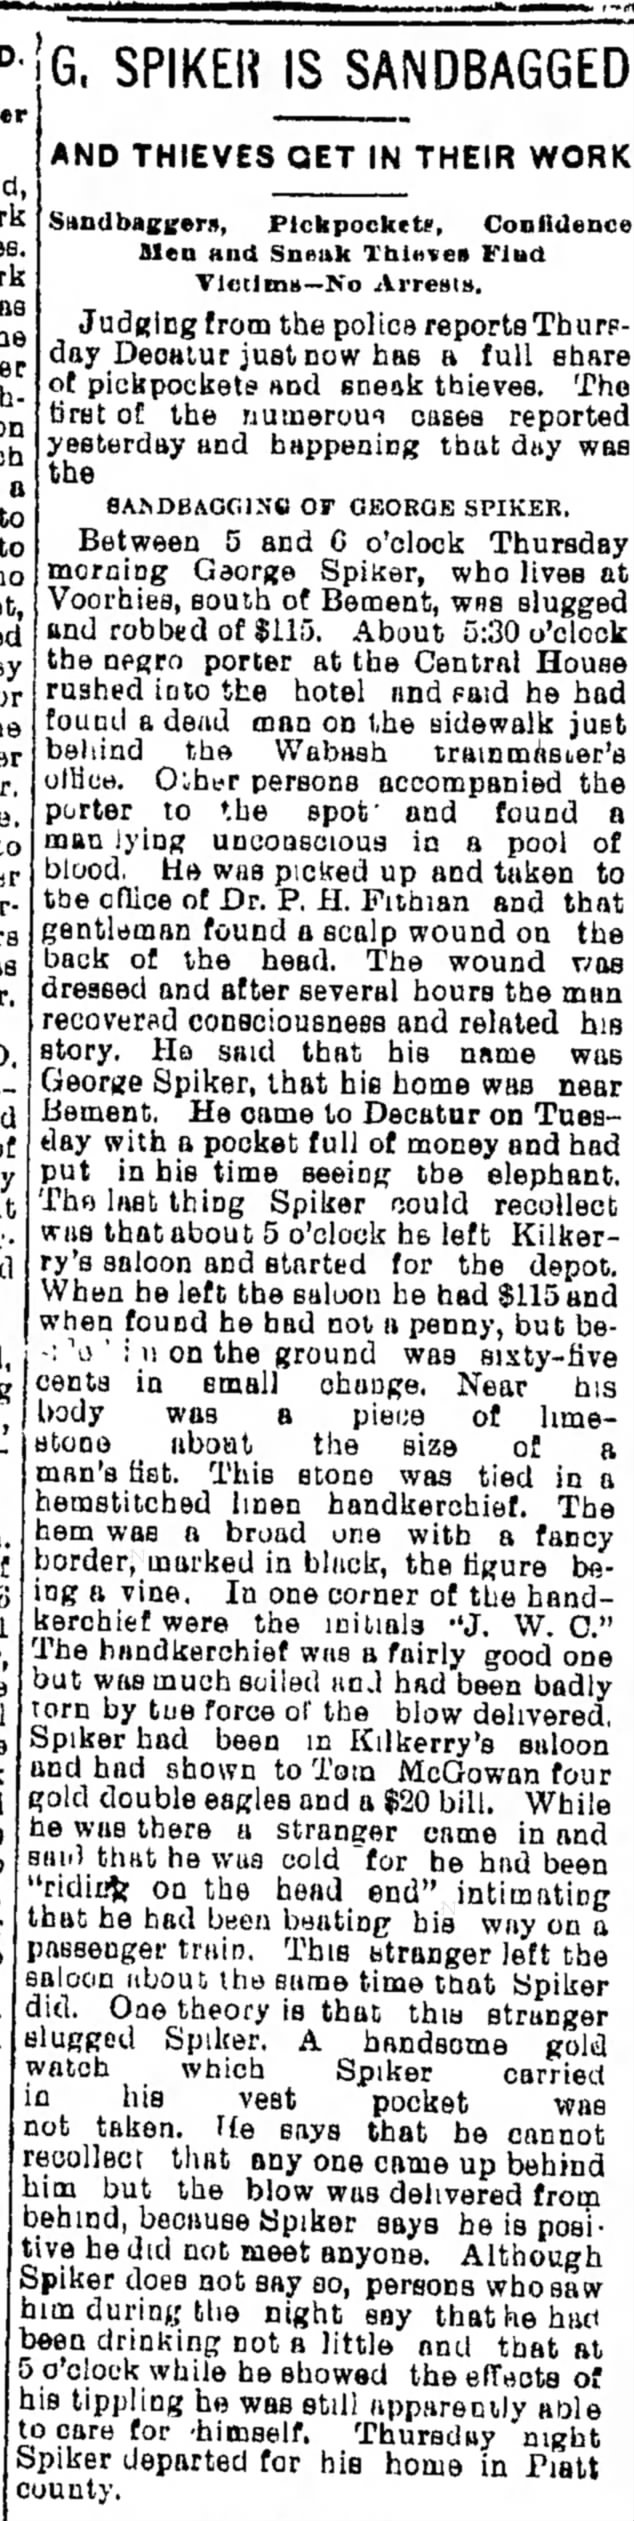 Geroge Spiker Voorhies S of  Bement Platt Co IL Herald-Despatch(Decator IL)27 Oct 1894